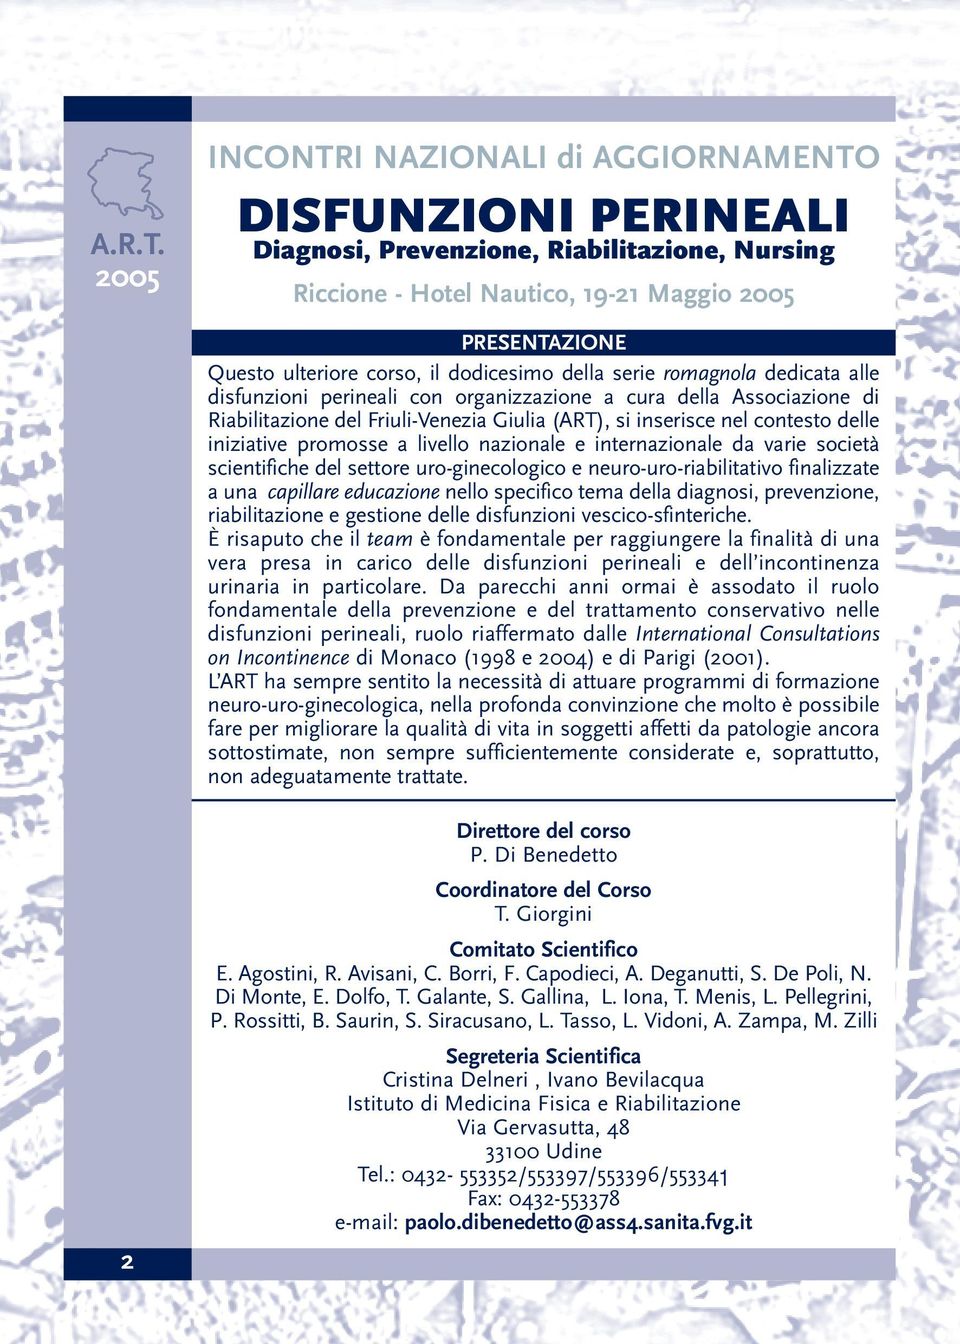 della serie romagnola dedicata alle disfunzioni perineali con organizzazione a cura della Associazione di Riabilitazione del Friuli-Venezia Giulia (ART), si inserisce nel contesto delle iniziative